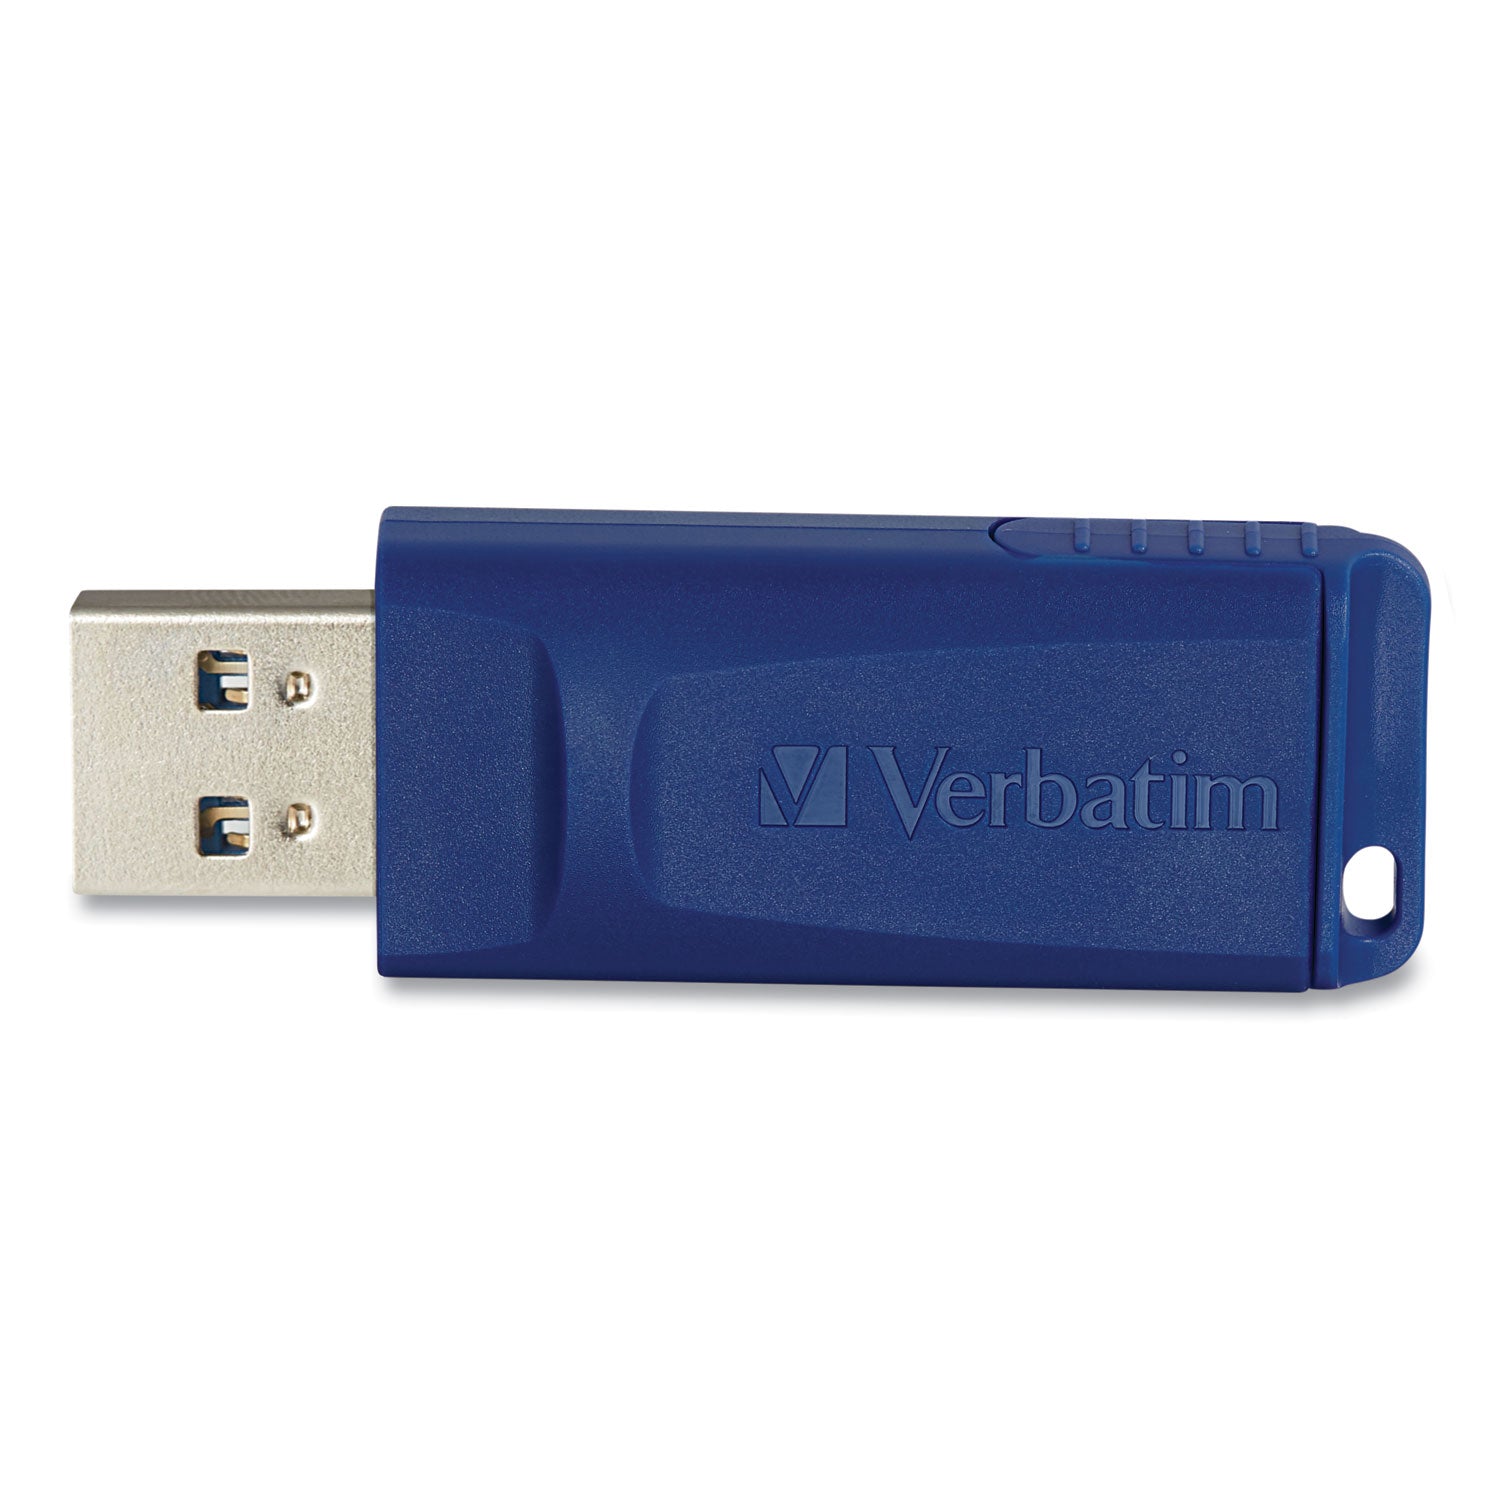 Classic USB 2.0 Flash Drive, 64 GB, Blue - 